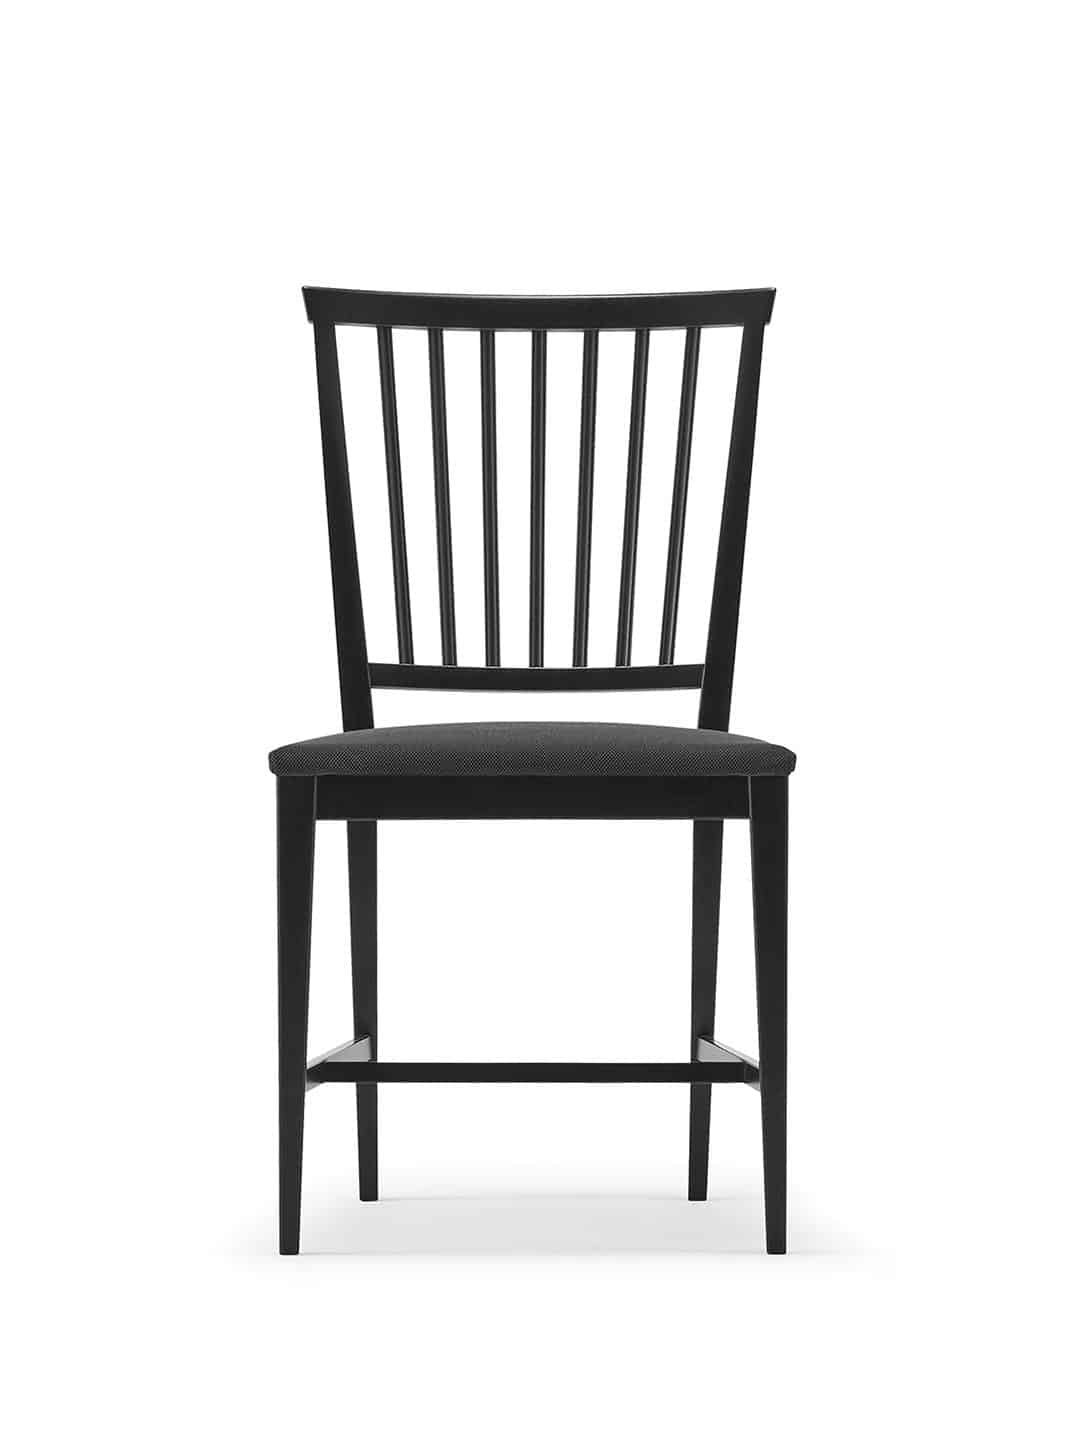 Стильный стул Stolab Vardags черного цвета